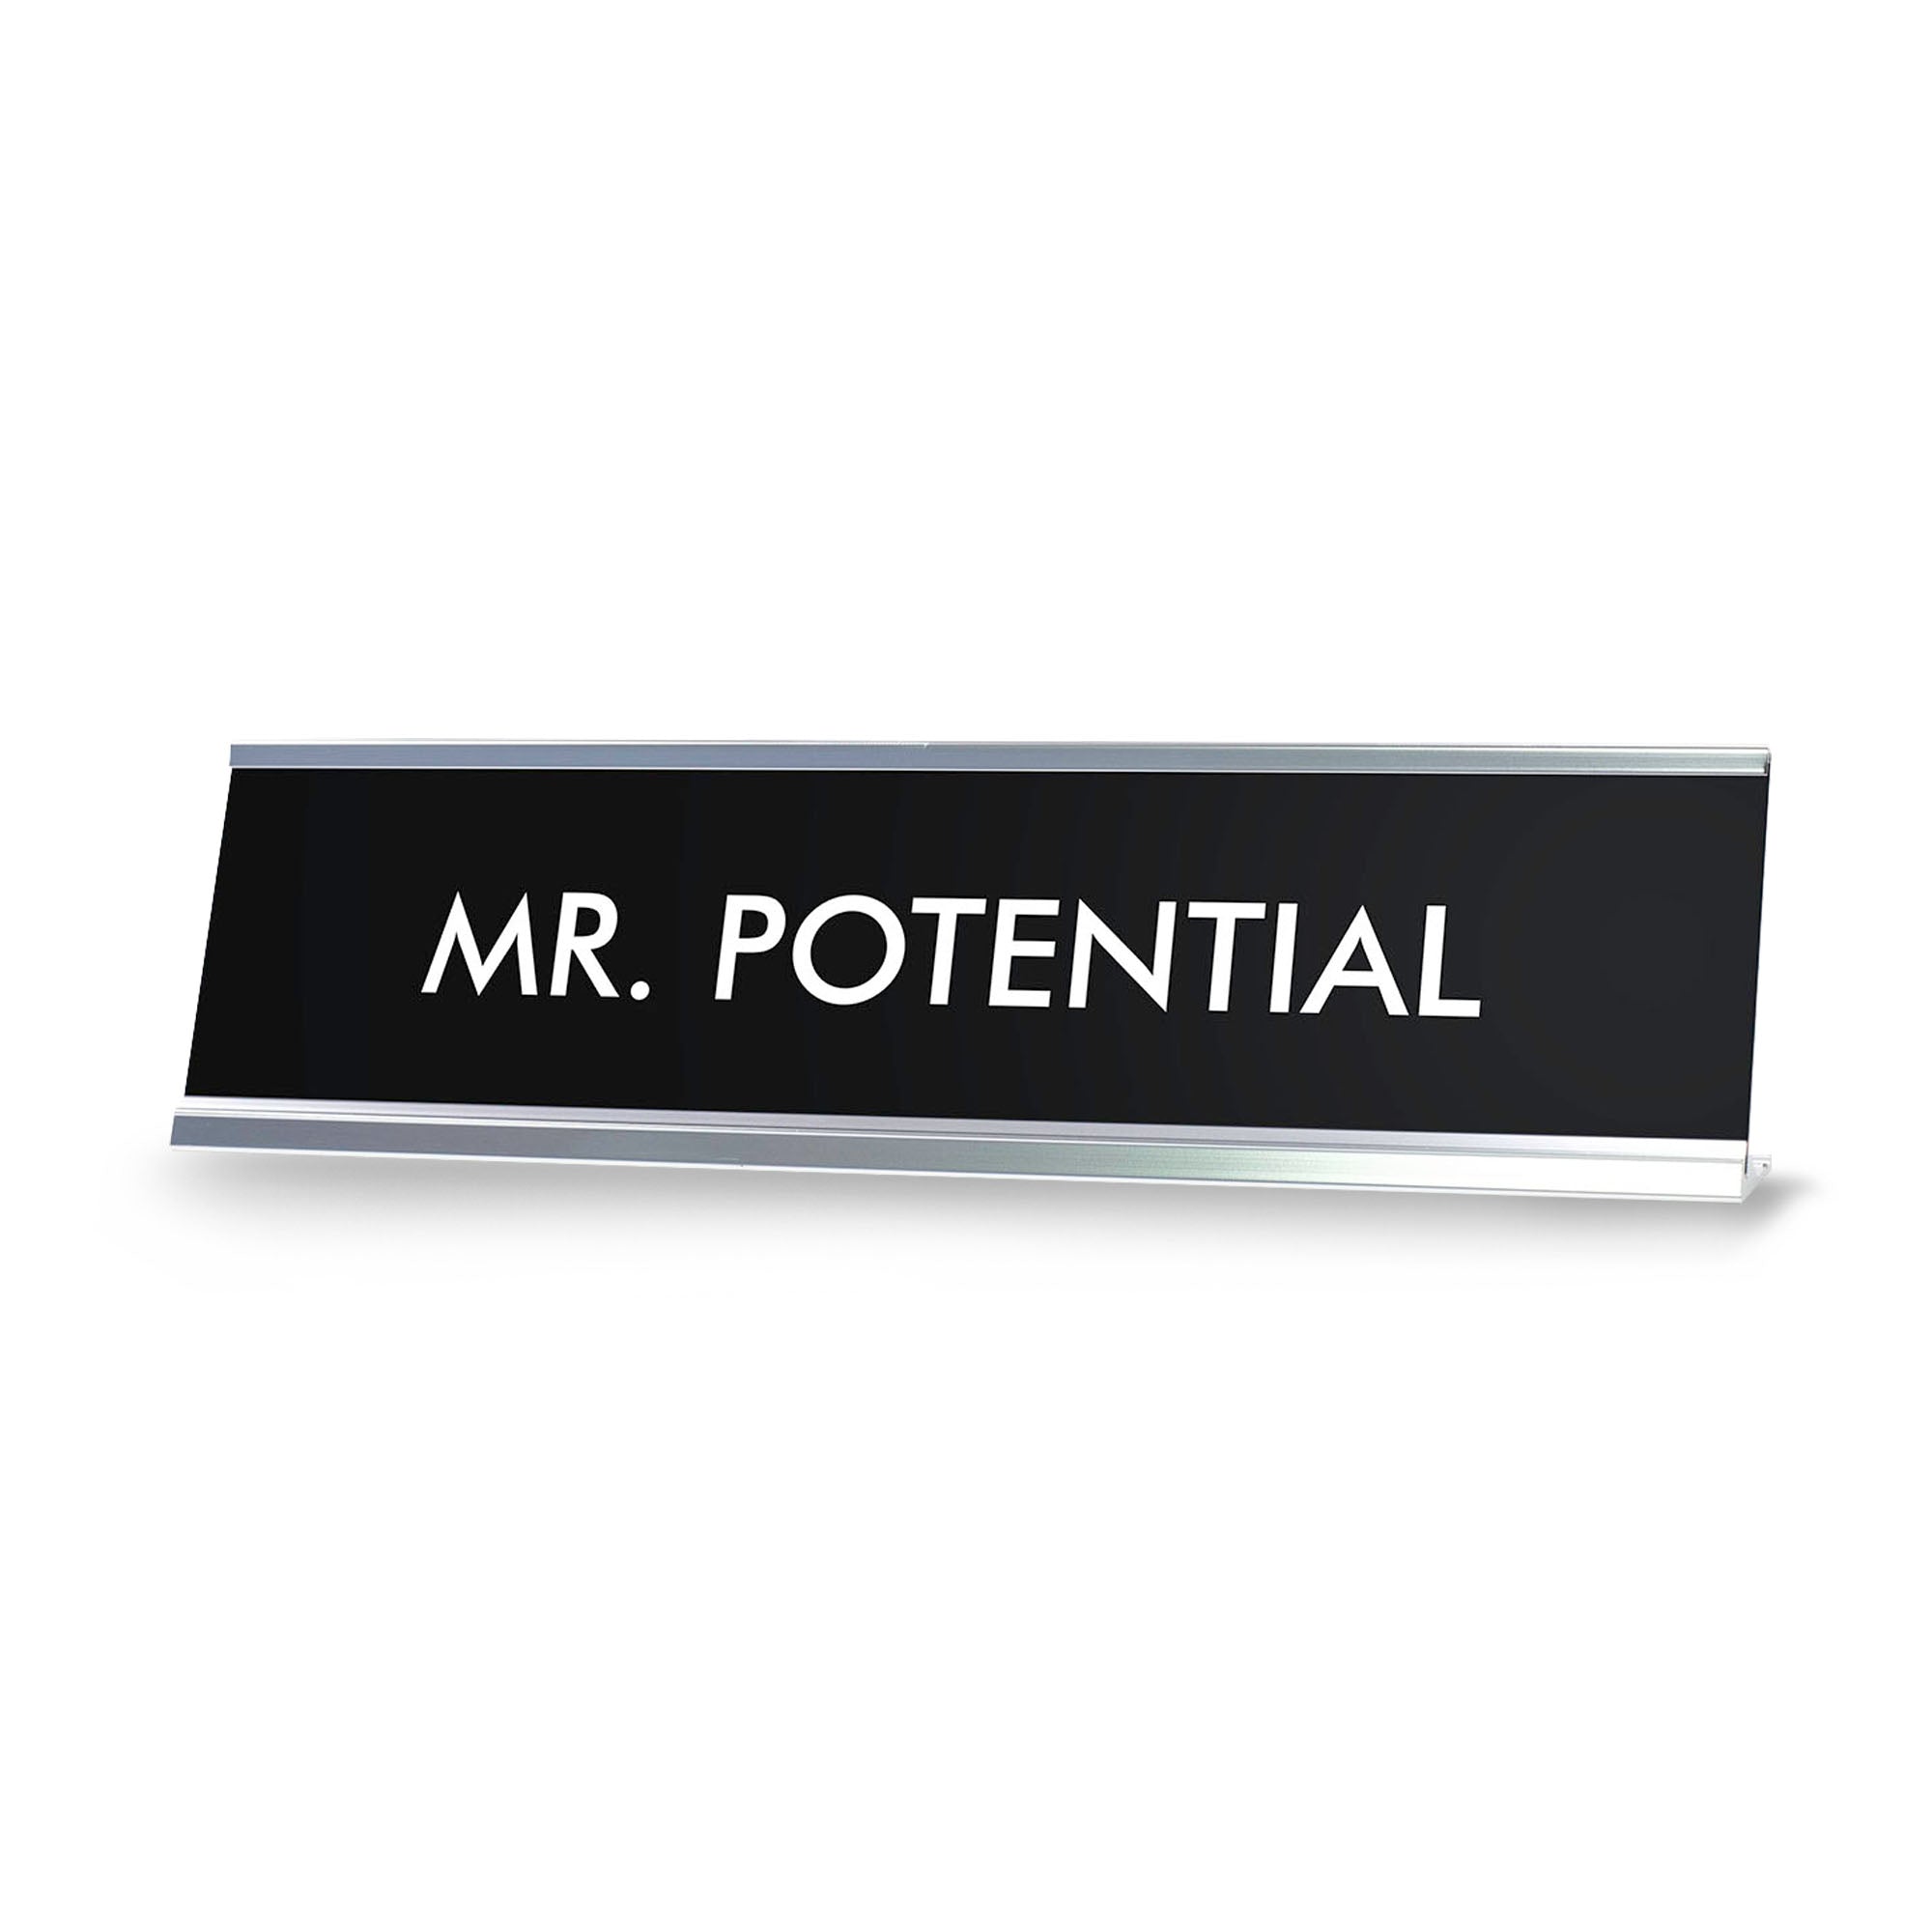 MR. POTENTIAL Novelty Desk Sign